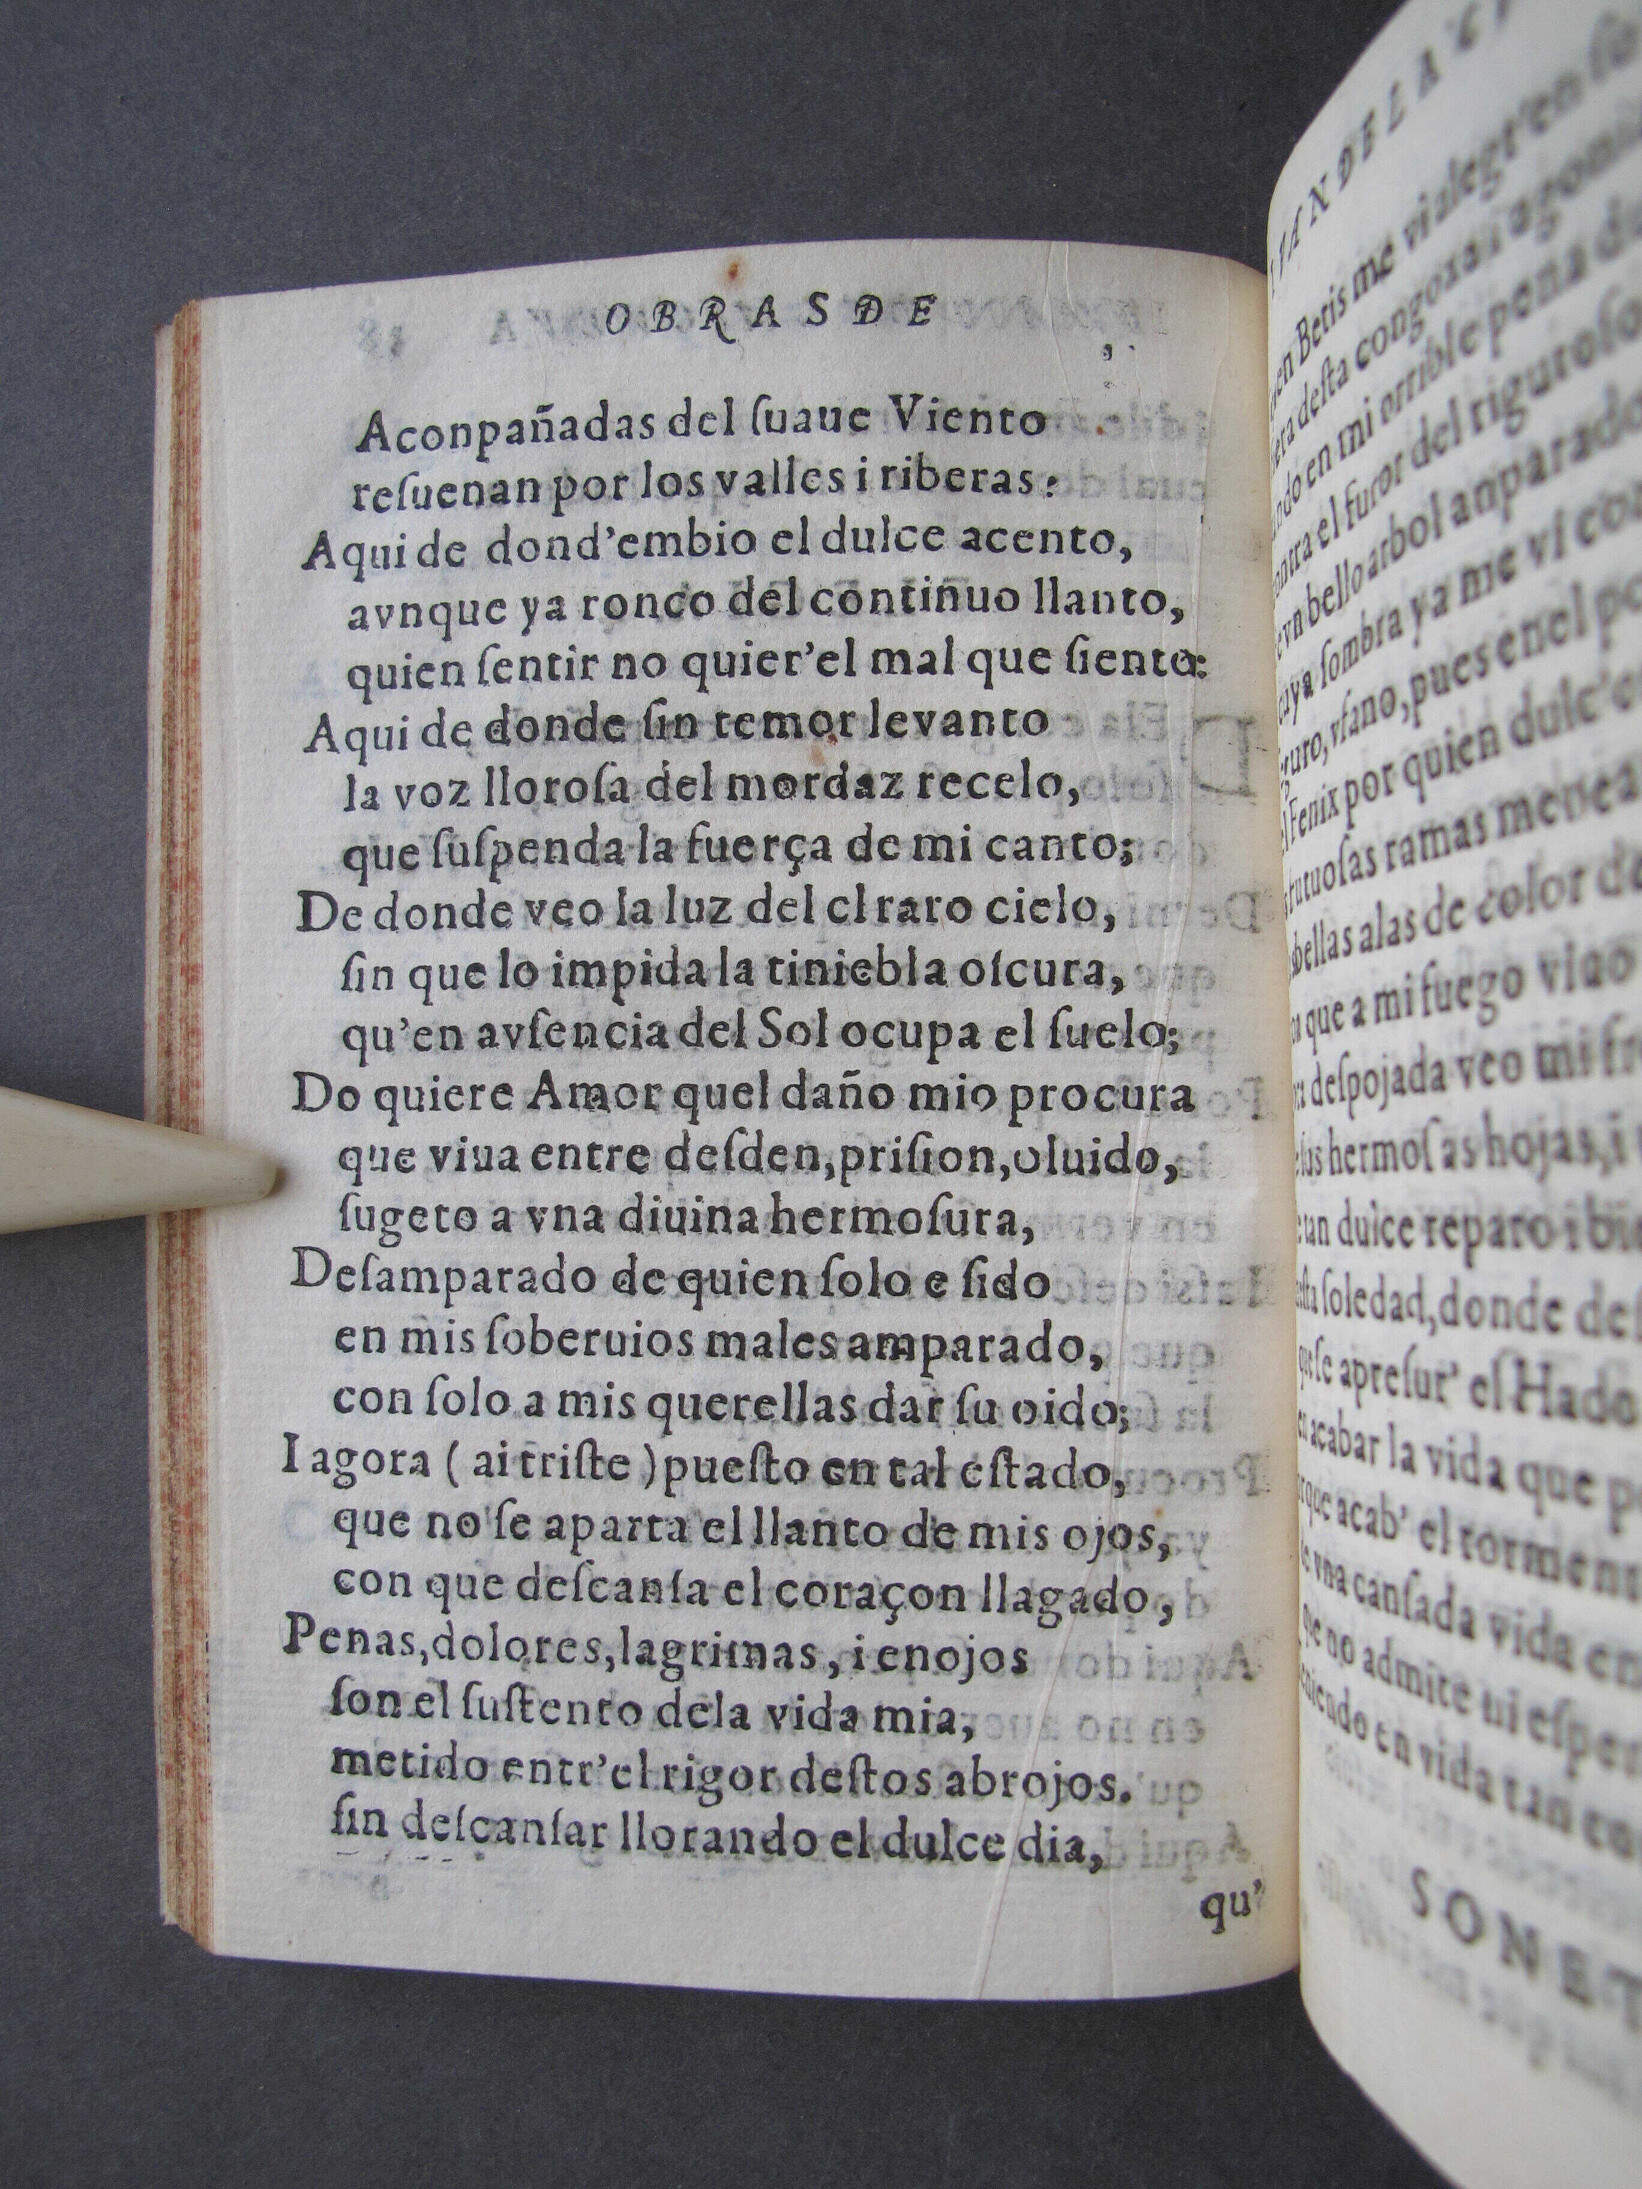 Folio E6 verso